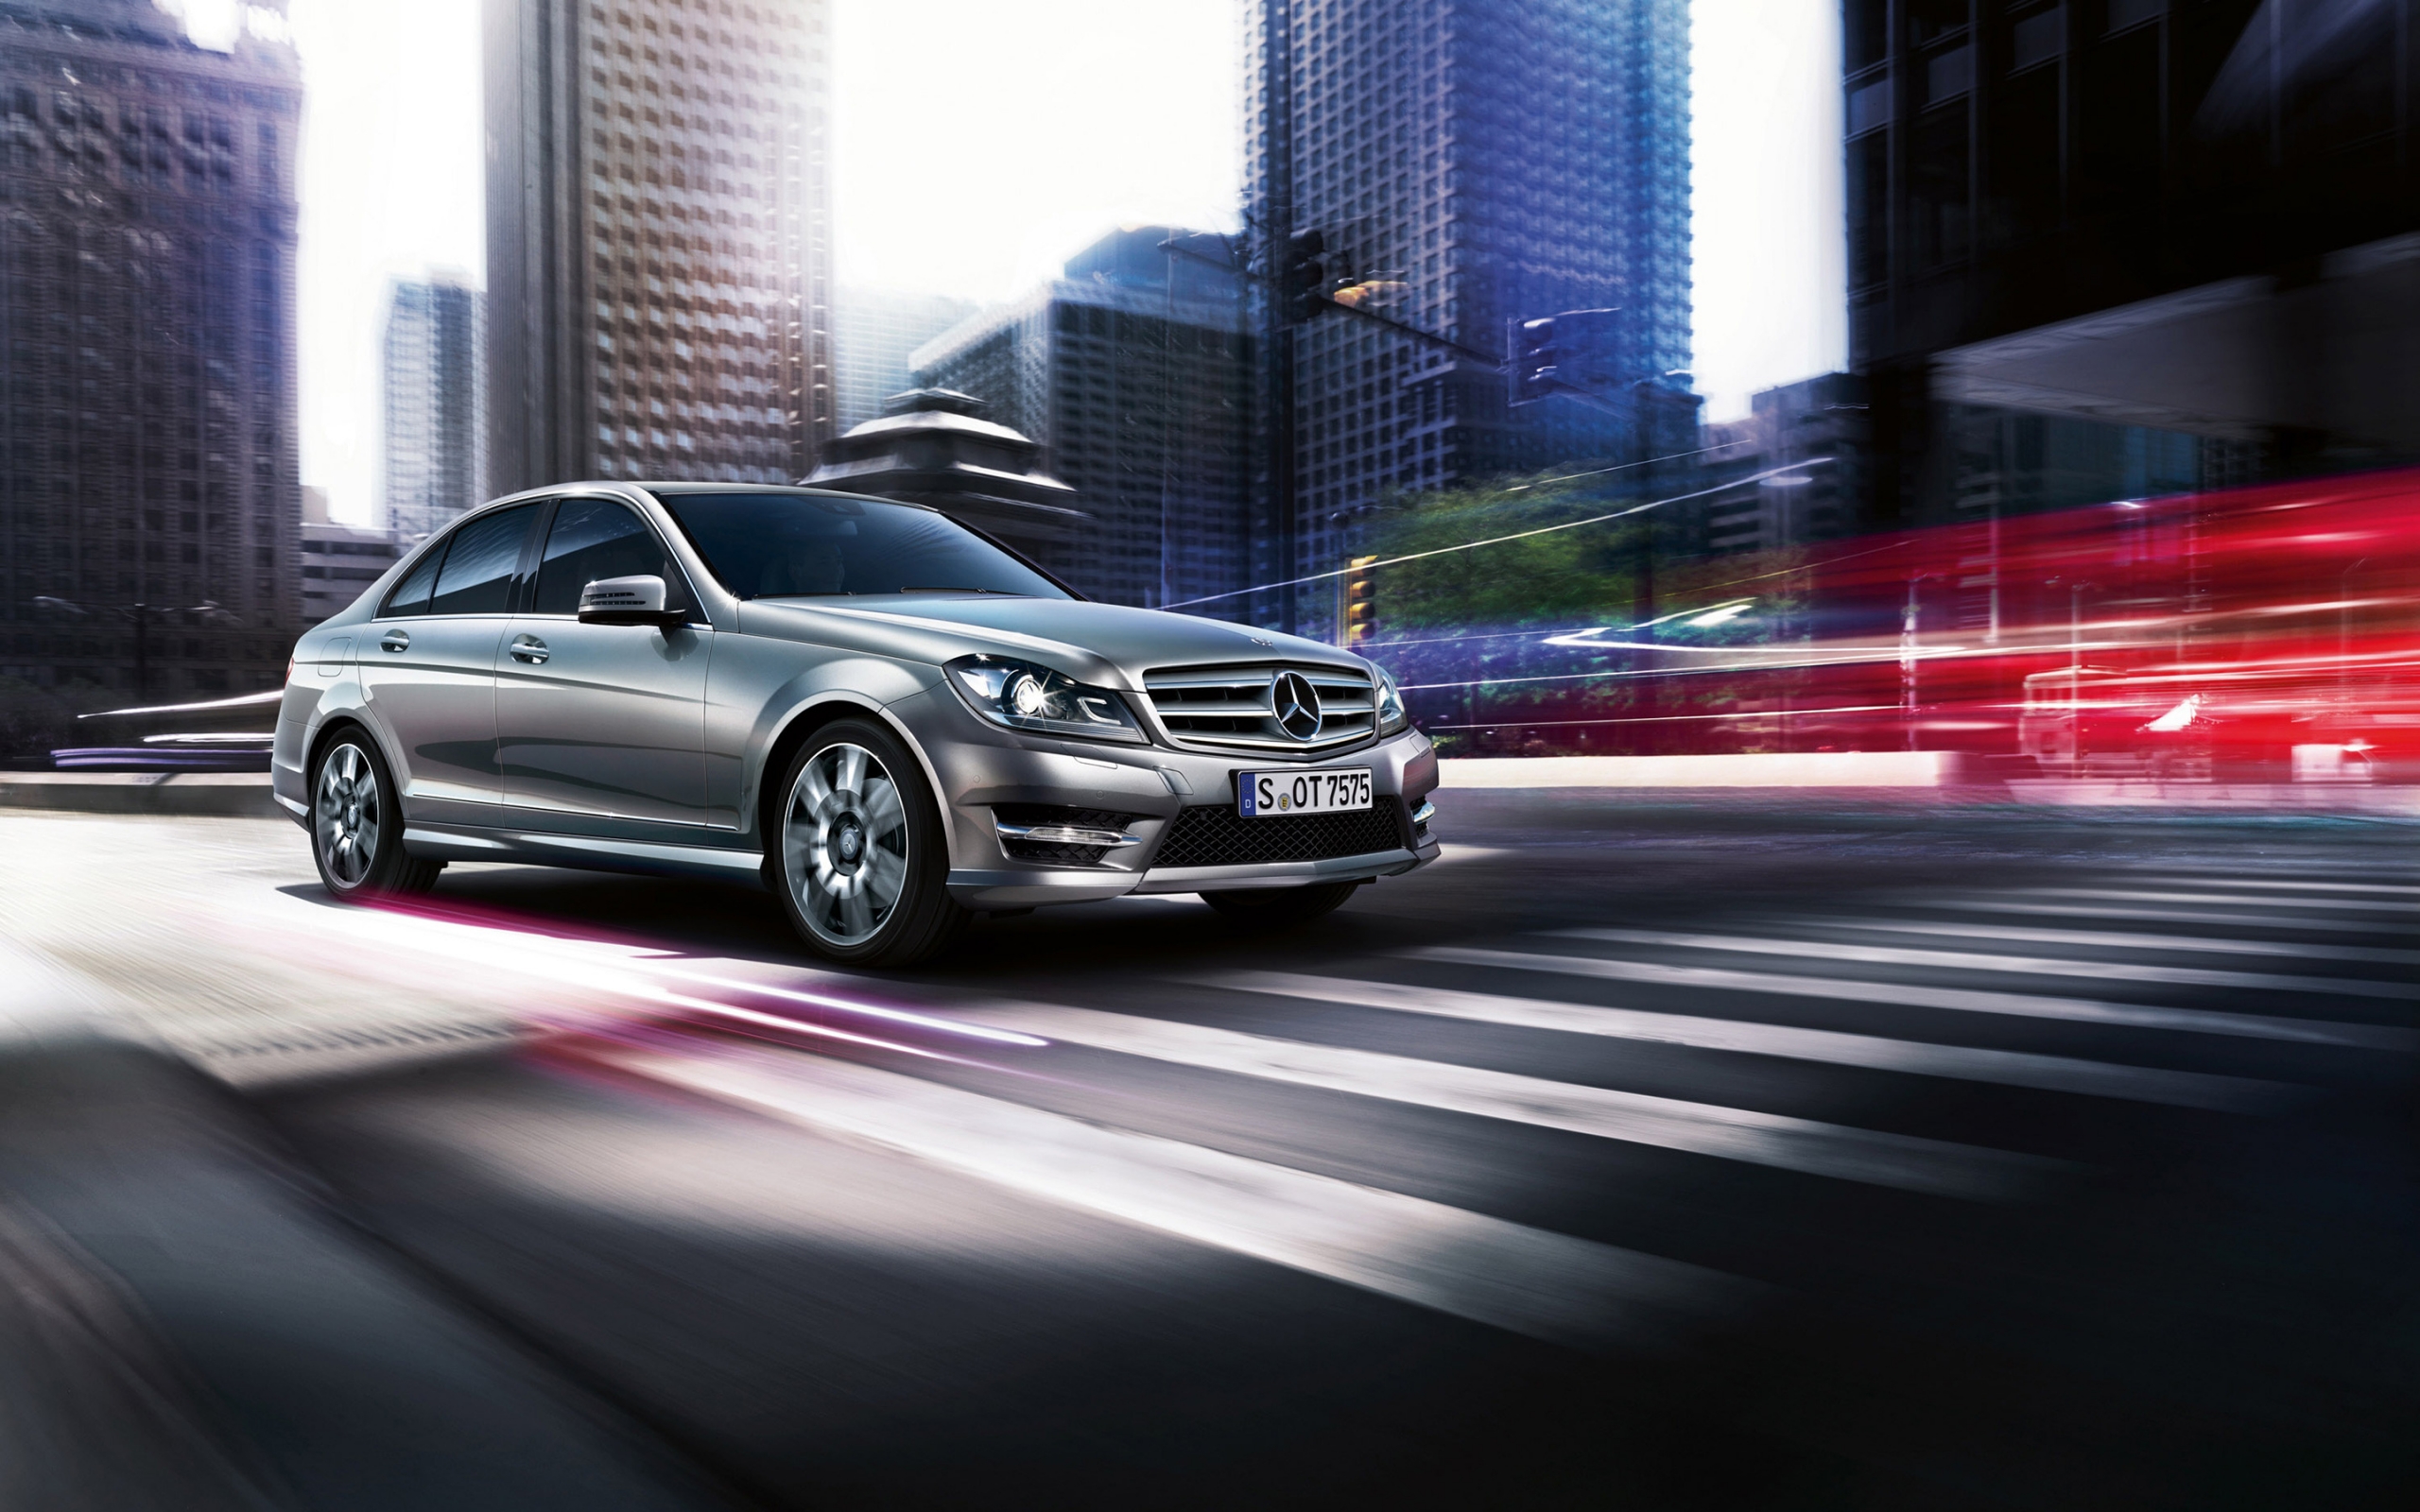 2013 Mercedes-Benz C Class for 2560 x 1600 widescreen resolution